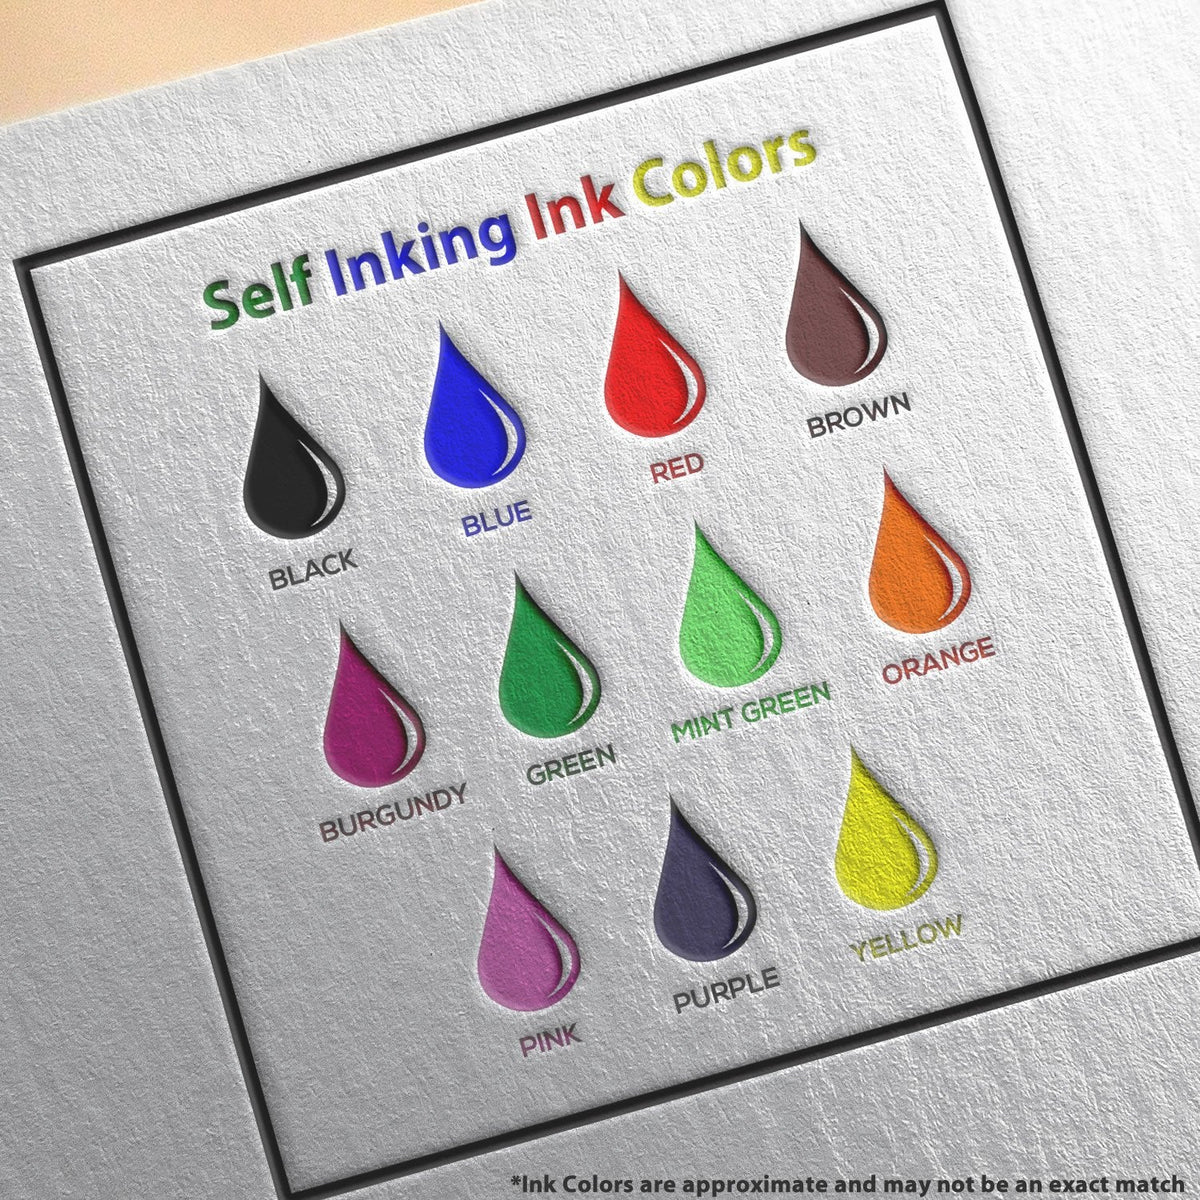 Self-Inking SAM Stamp Ink Color Options